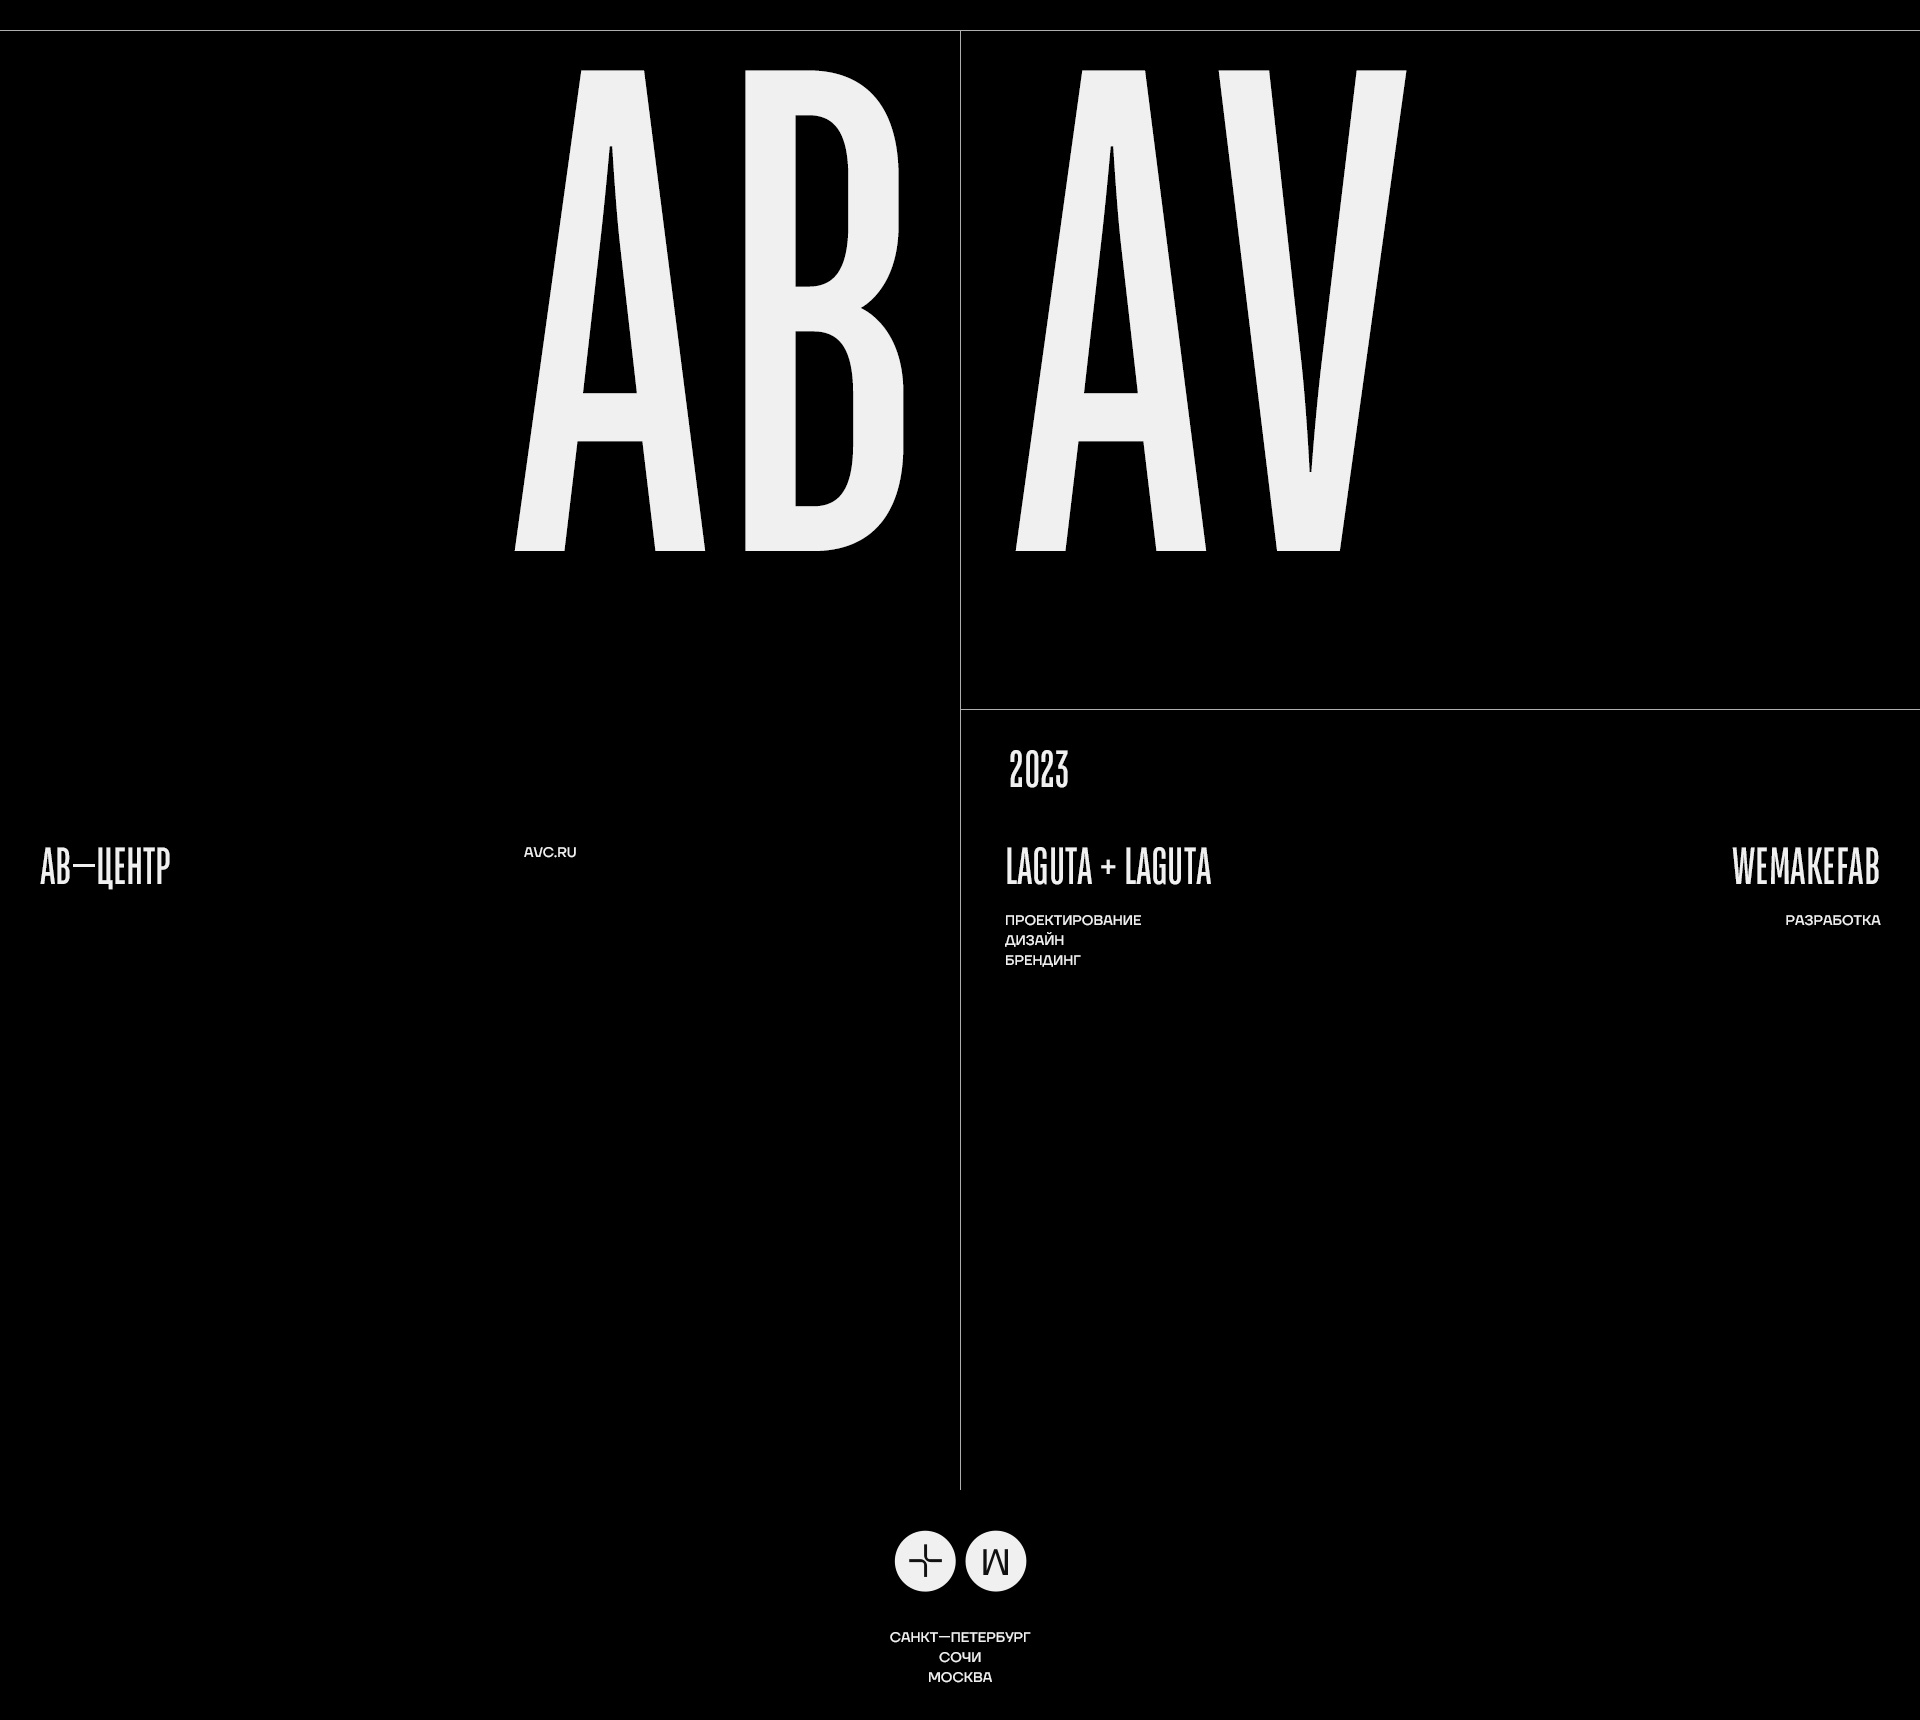 АВ—Центр — Изображение №15 — Интерфейсы, Анимация на Dprofile